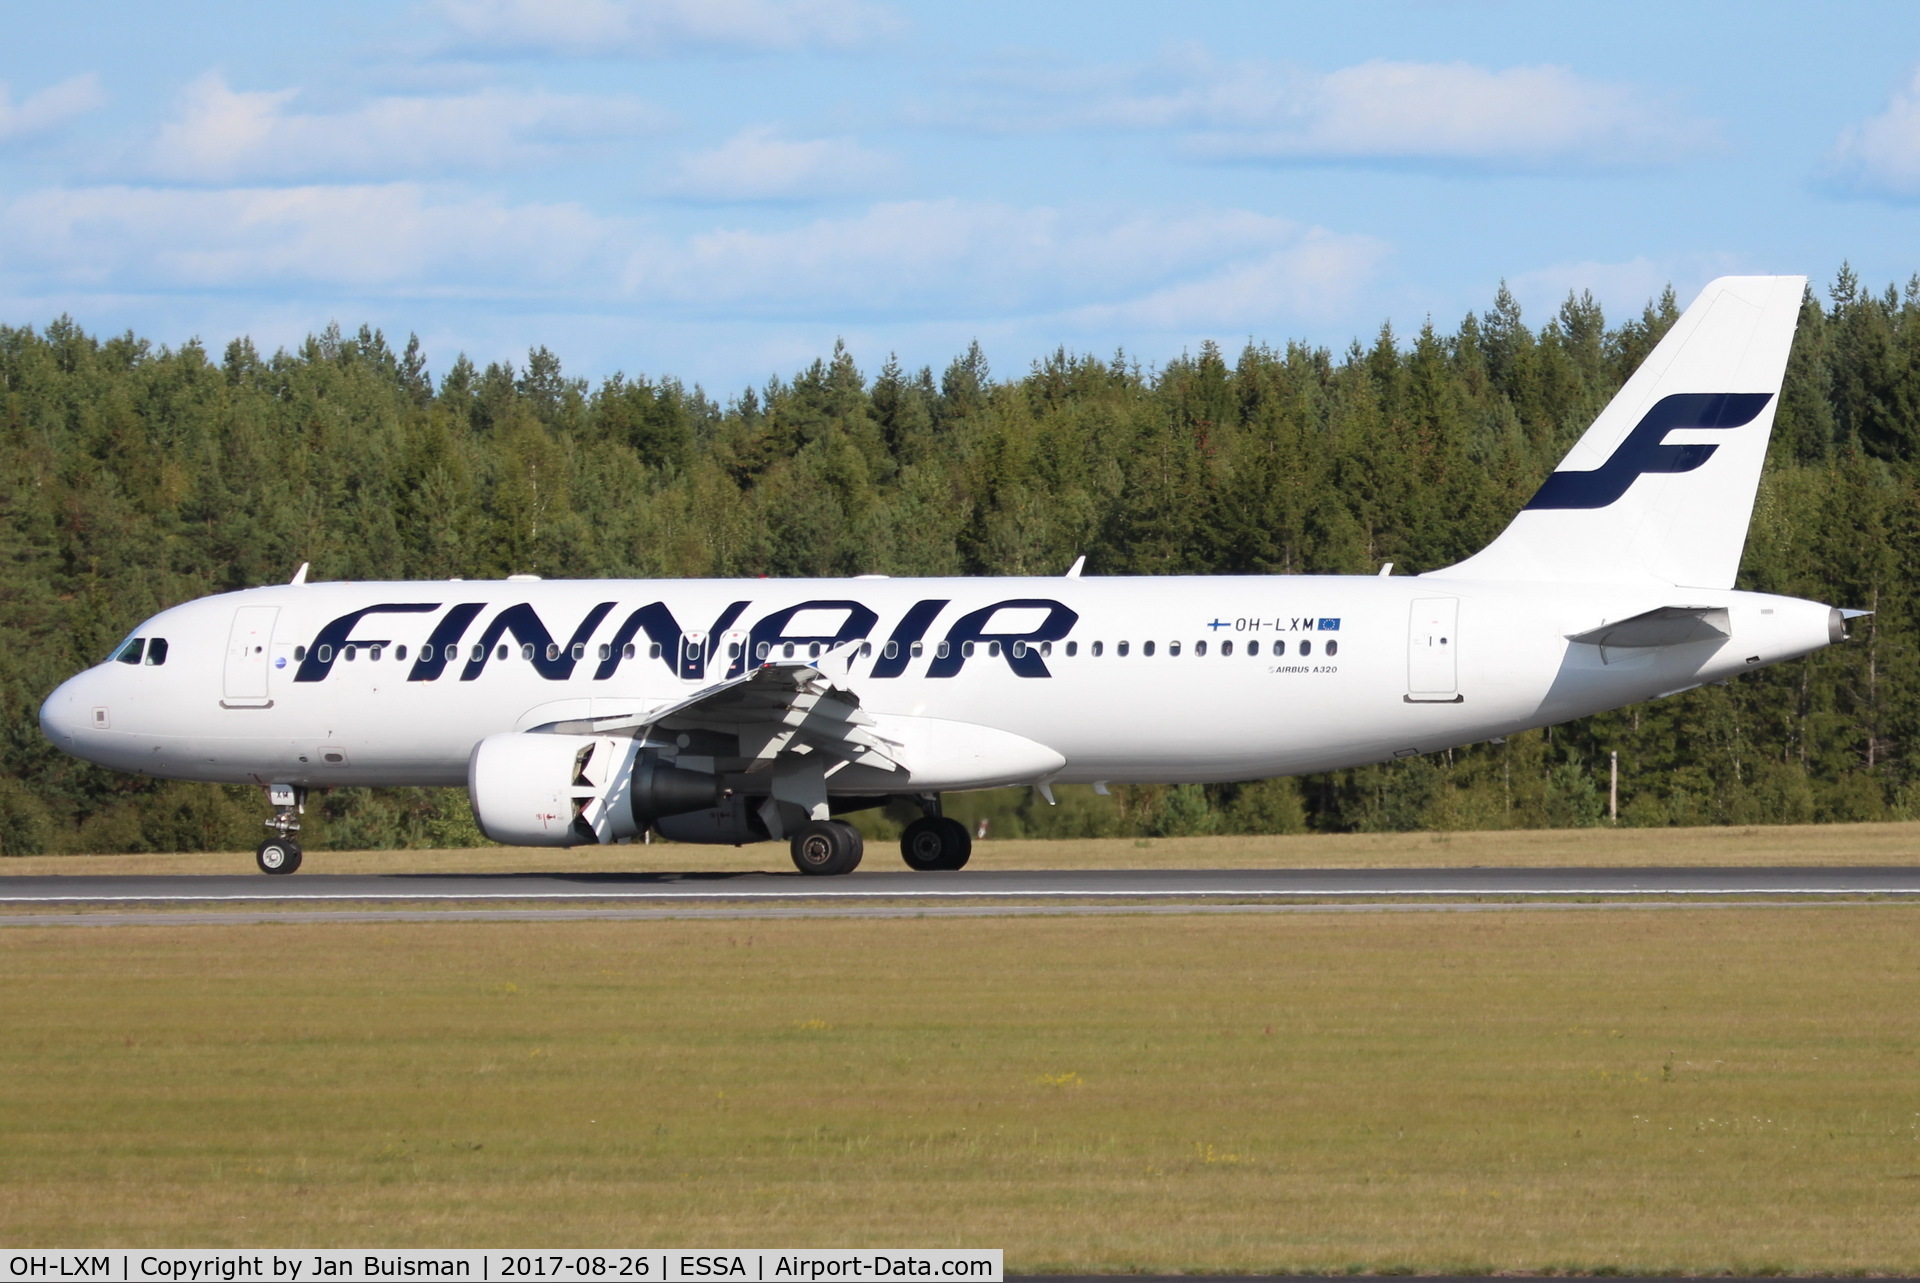 OH-LXM, 2003 Airbus A320-214 C/N 2154, Finnair